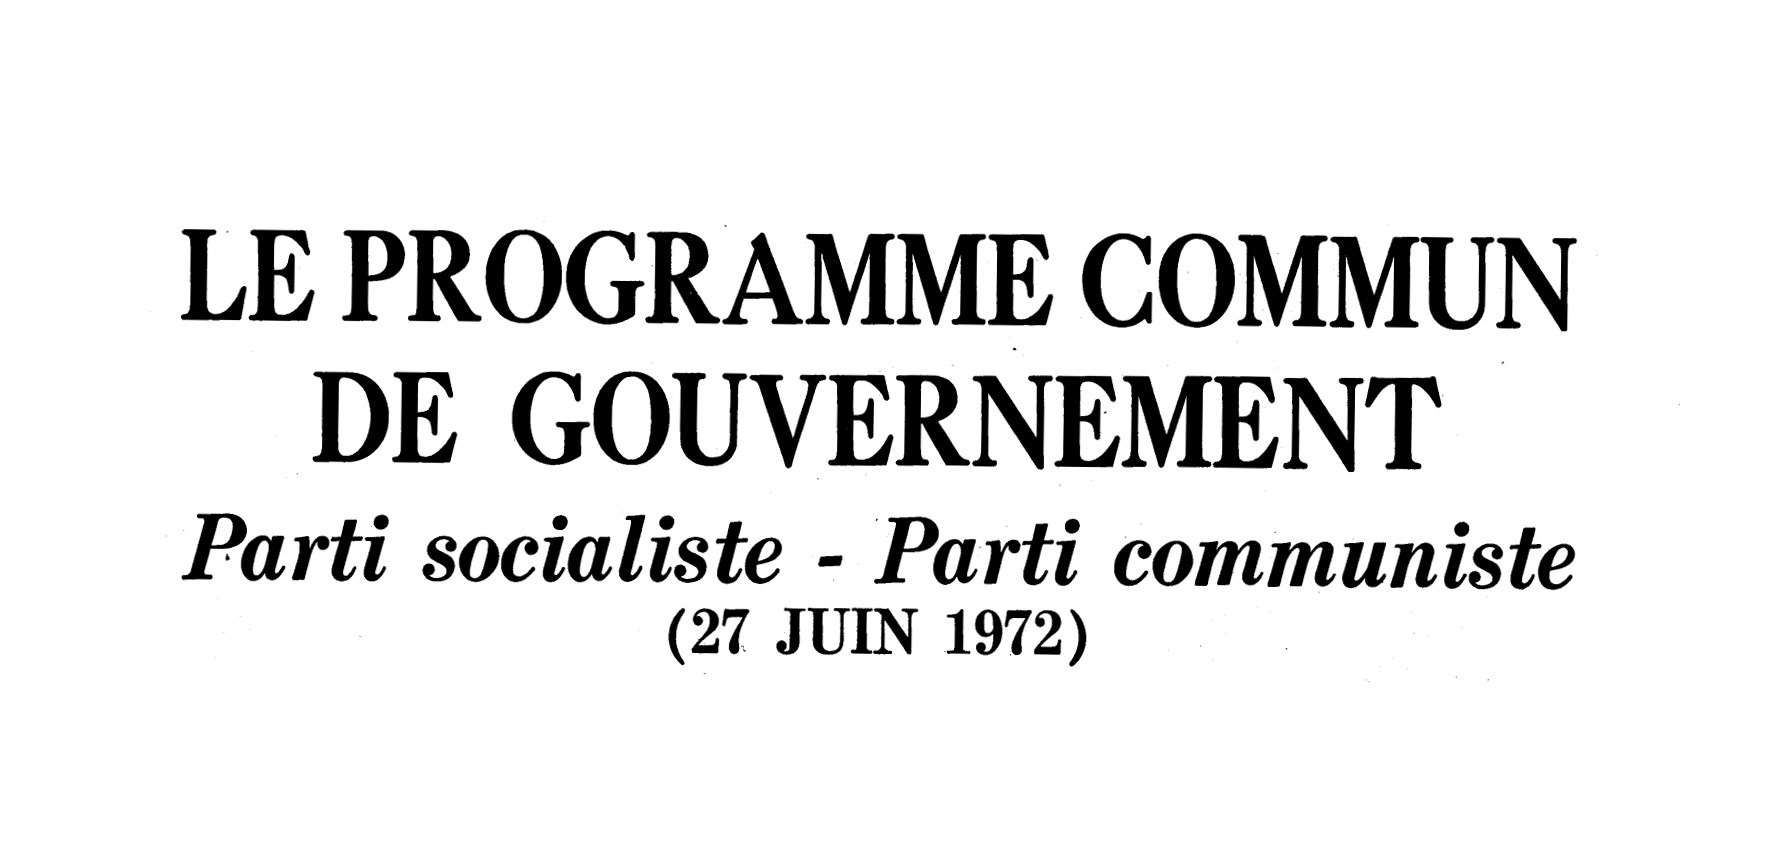 Le programme commun socialiste-communiste de 1972